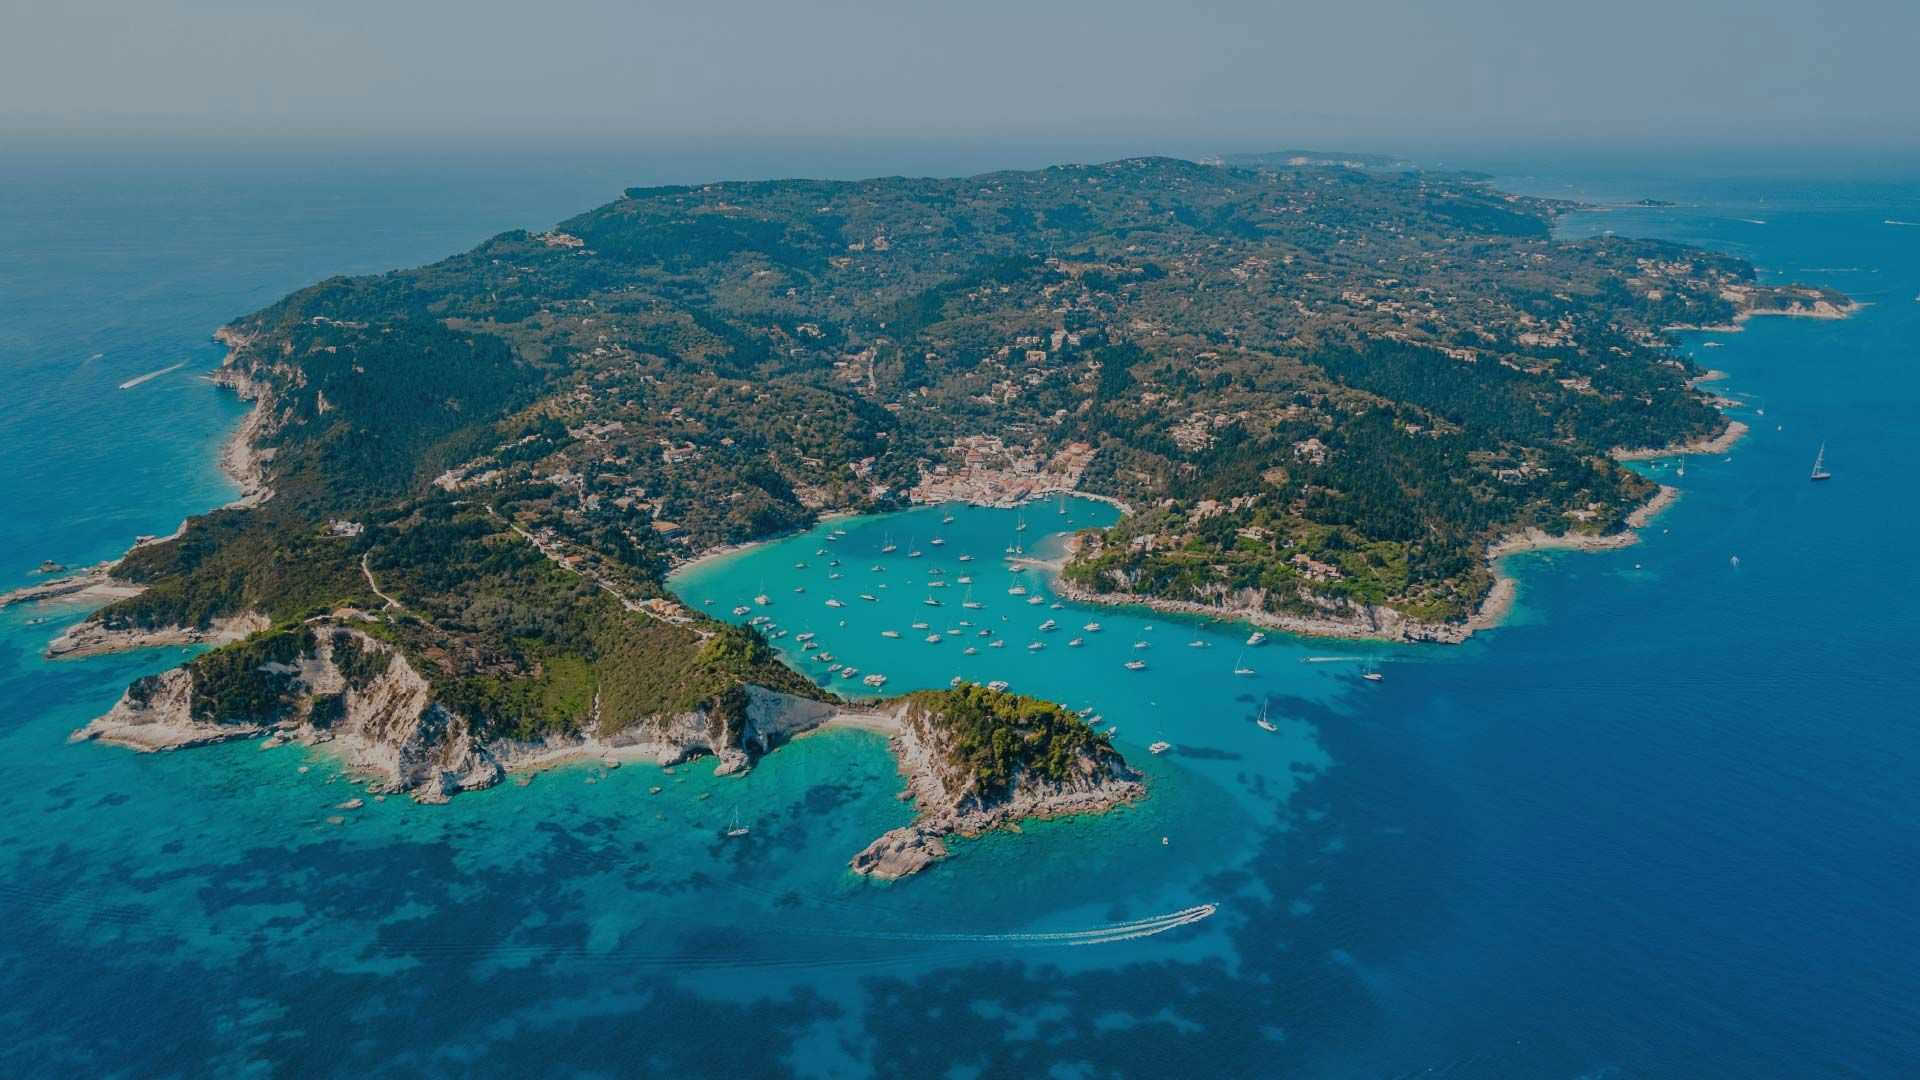 Ionian Islands in Greece